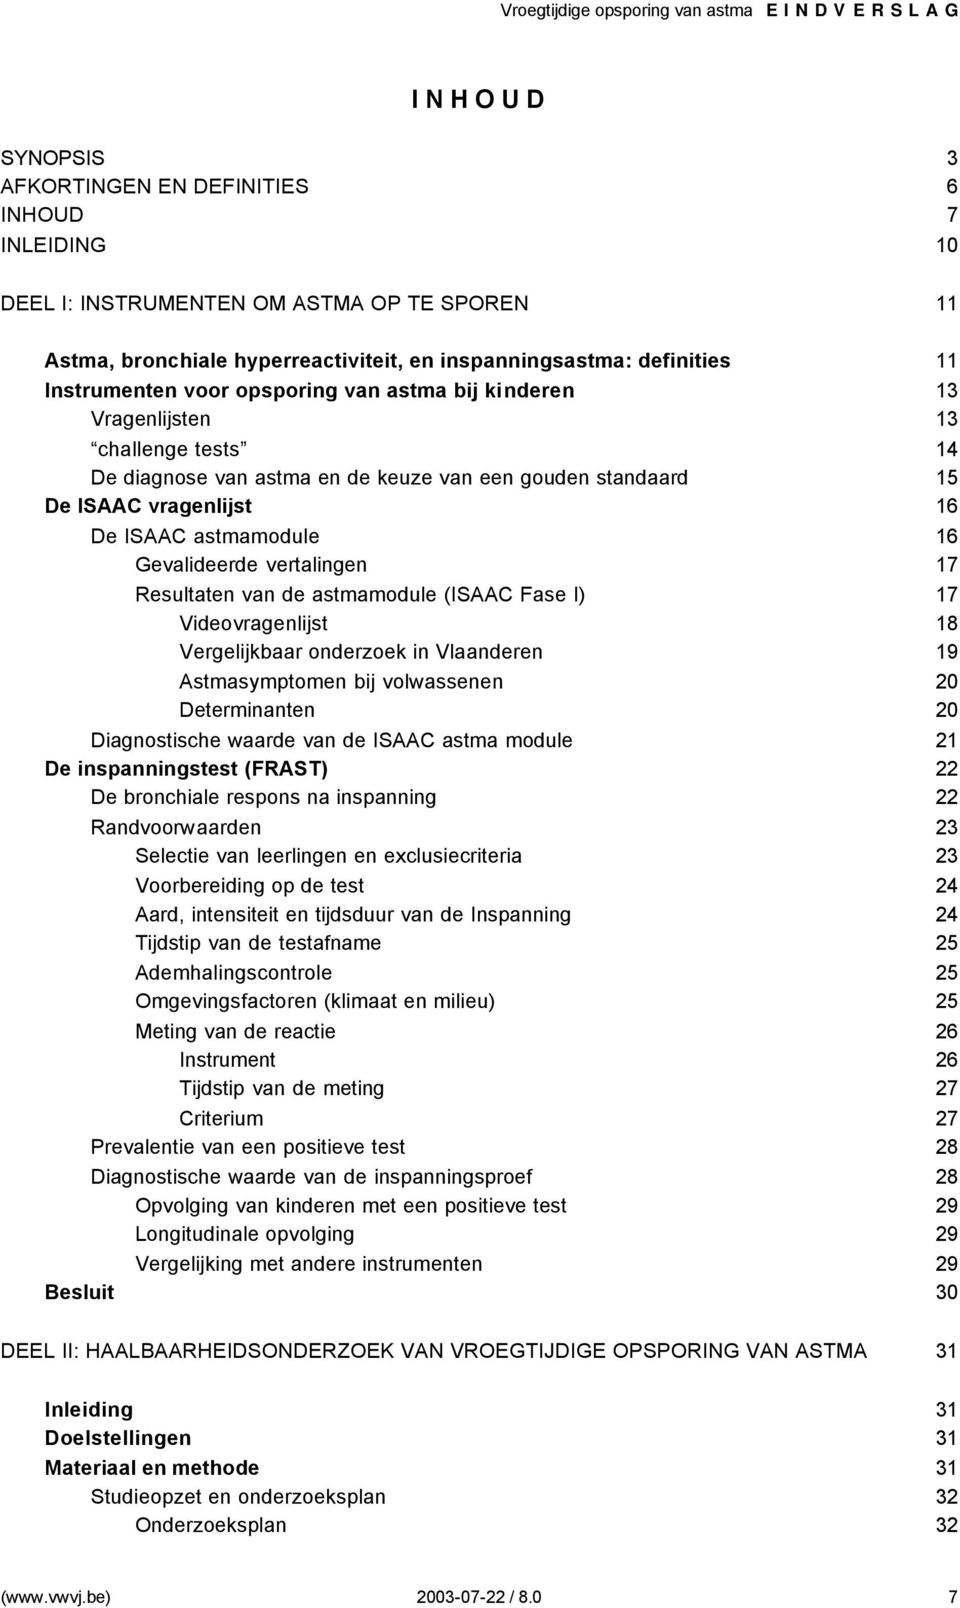 Gevalideerde vertalingen 17 Resultaten van de astmamodule (ISAAC Fase I) 17 Videovragenlijst 18 Vergelijkbaar onderzoek in Vlaanderen 19 Astmasymptomen bij volwassenen 20 Determinanten 20